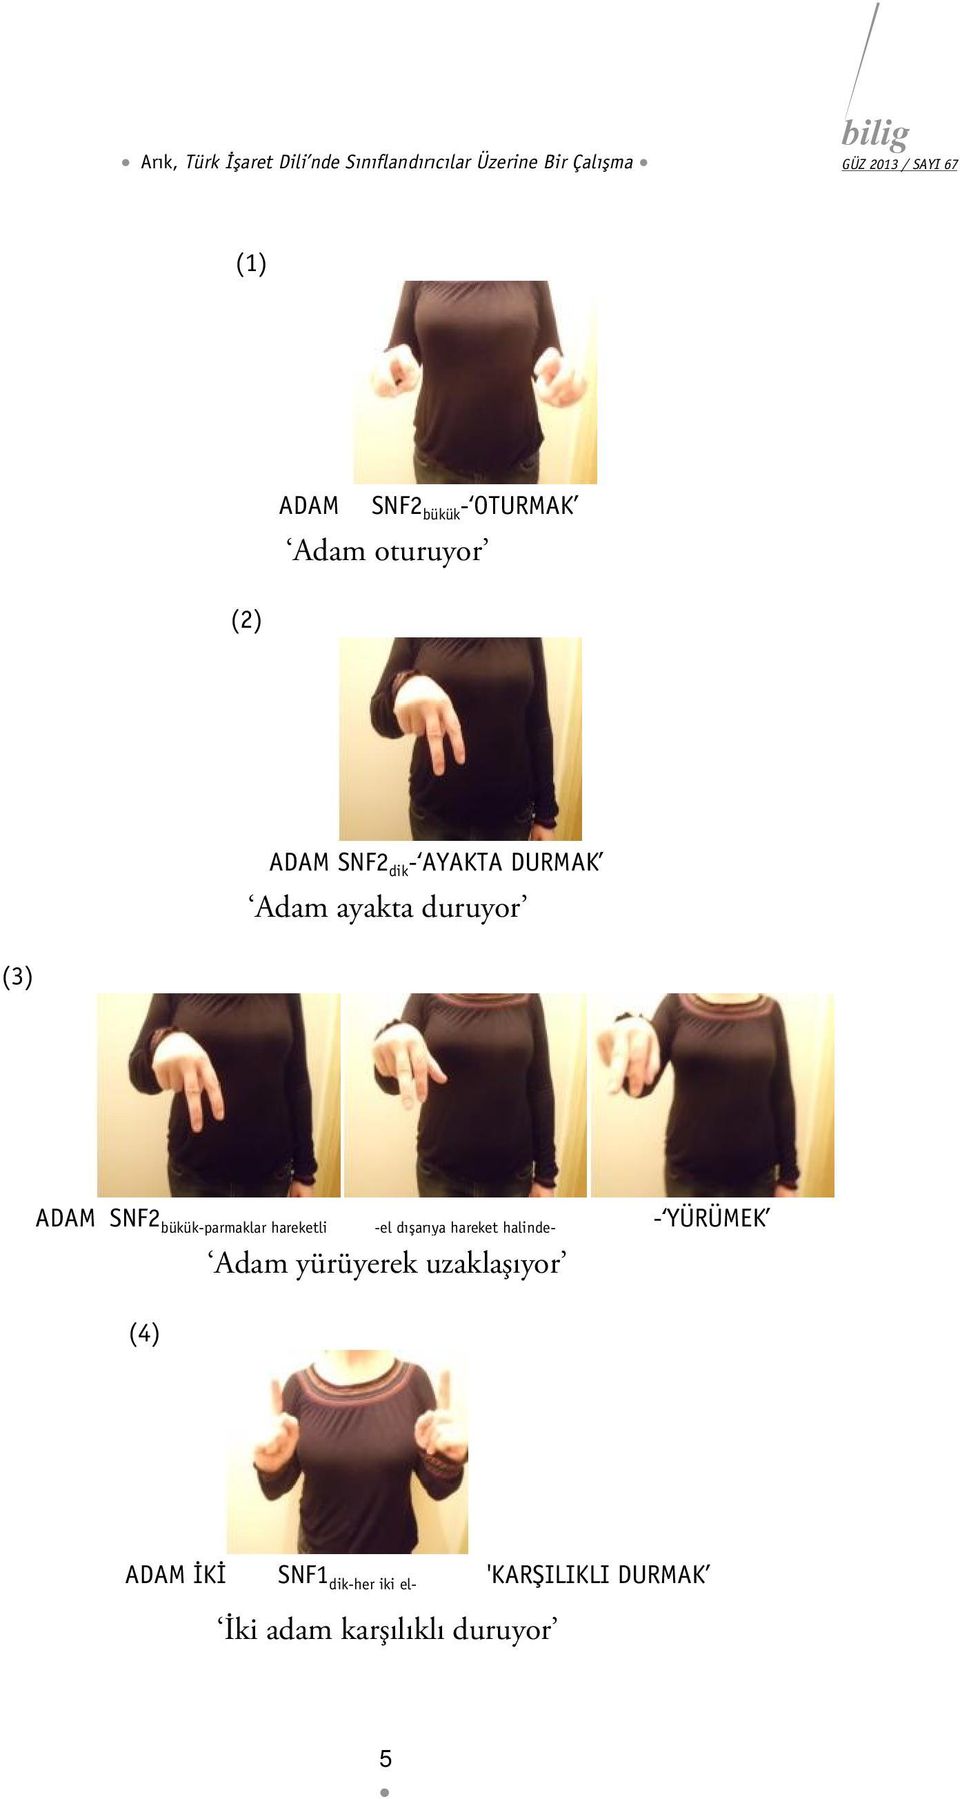 ADAM SNF2 bükük-parmaklar hareketli -el dışarıya hareket halinde- - YÜRÜMEK (4) Adam